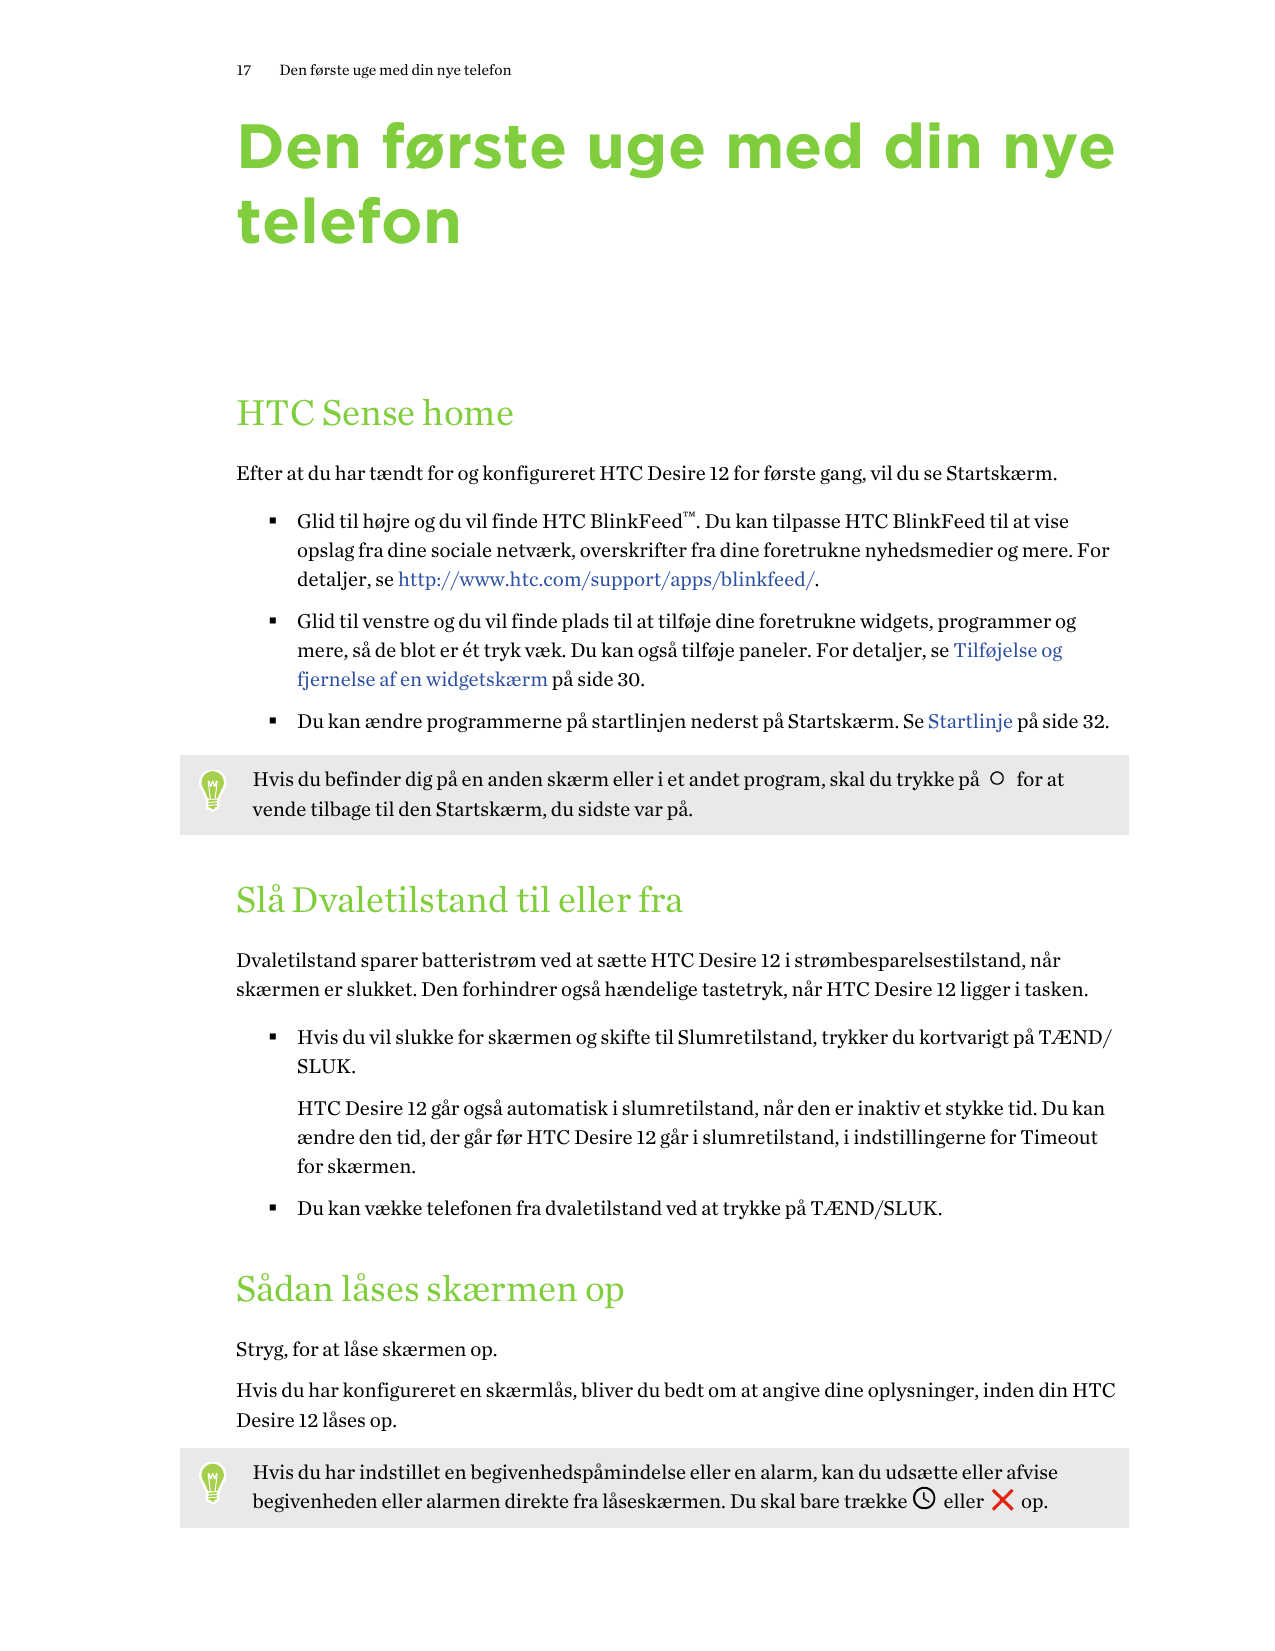 17Den første uge med din nye telefonDen første uge med din nyetelefonHTC Sense homeEfter at du har tændt for og konfigureret HTC